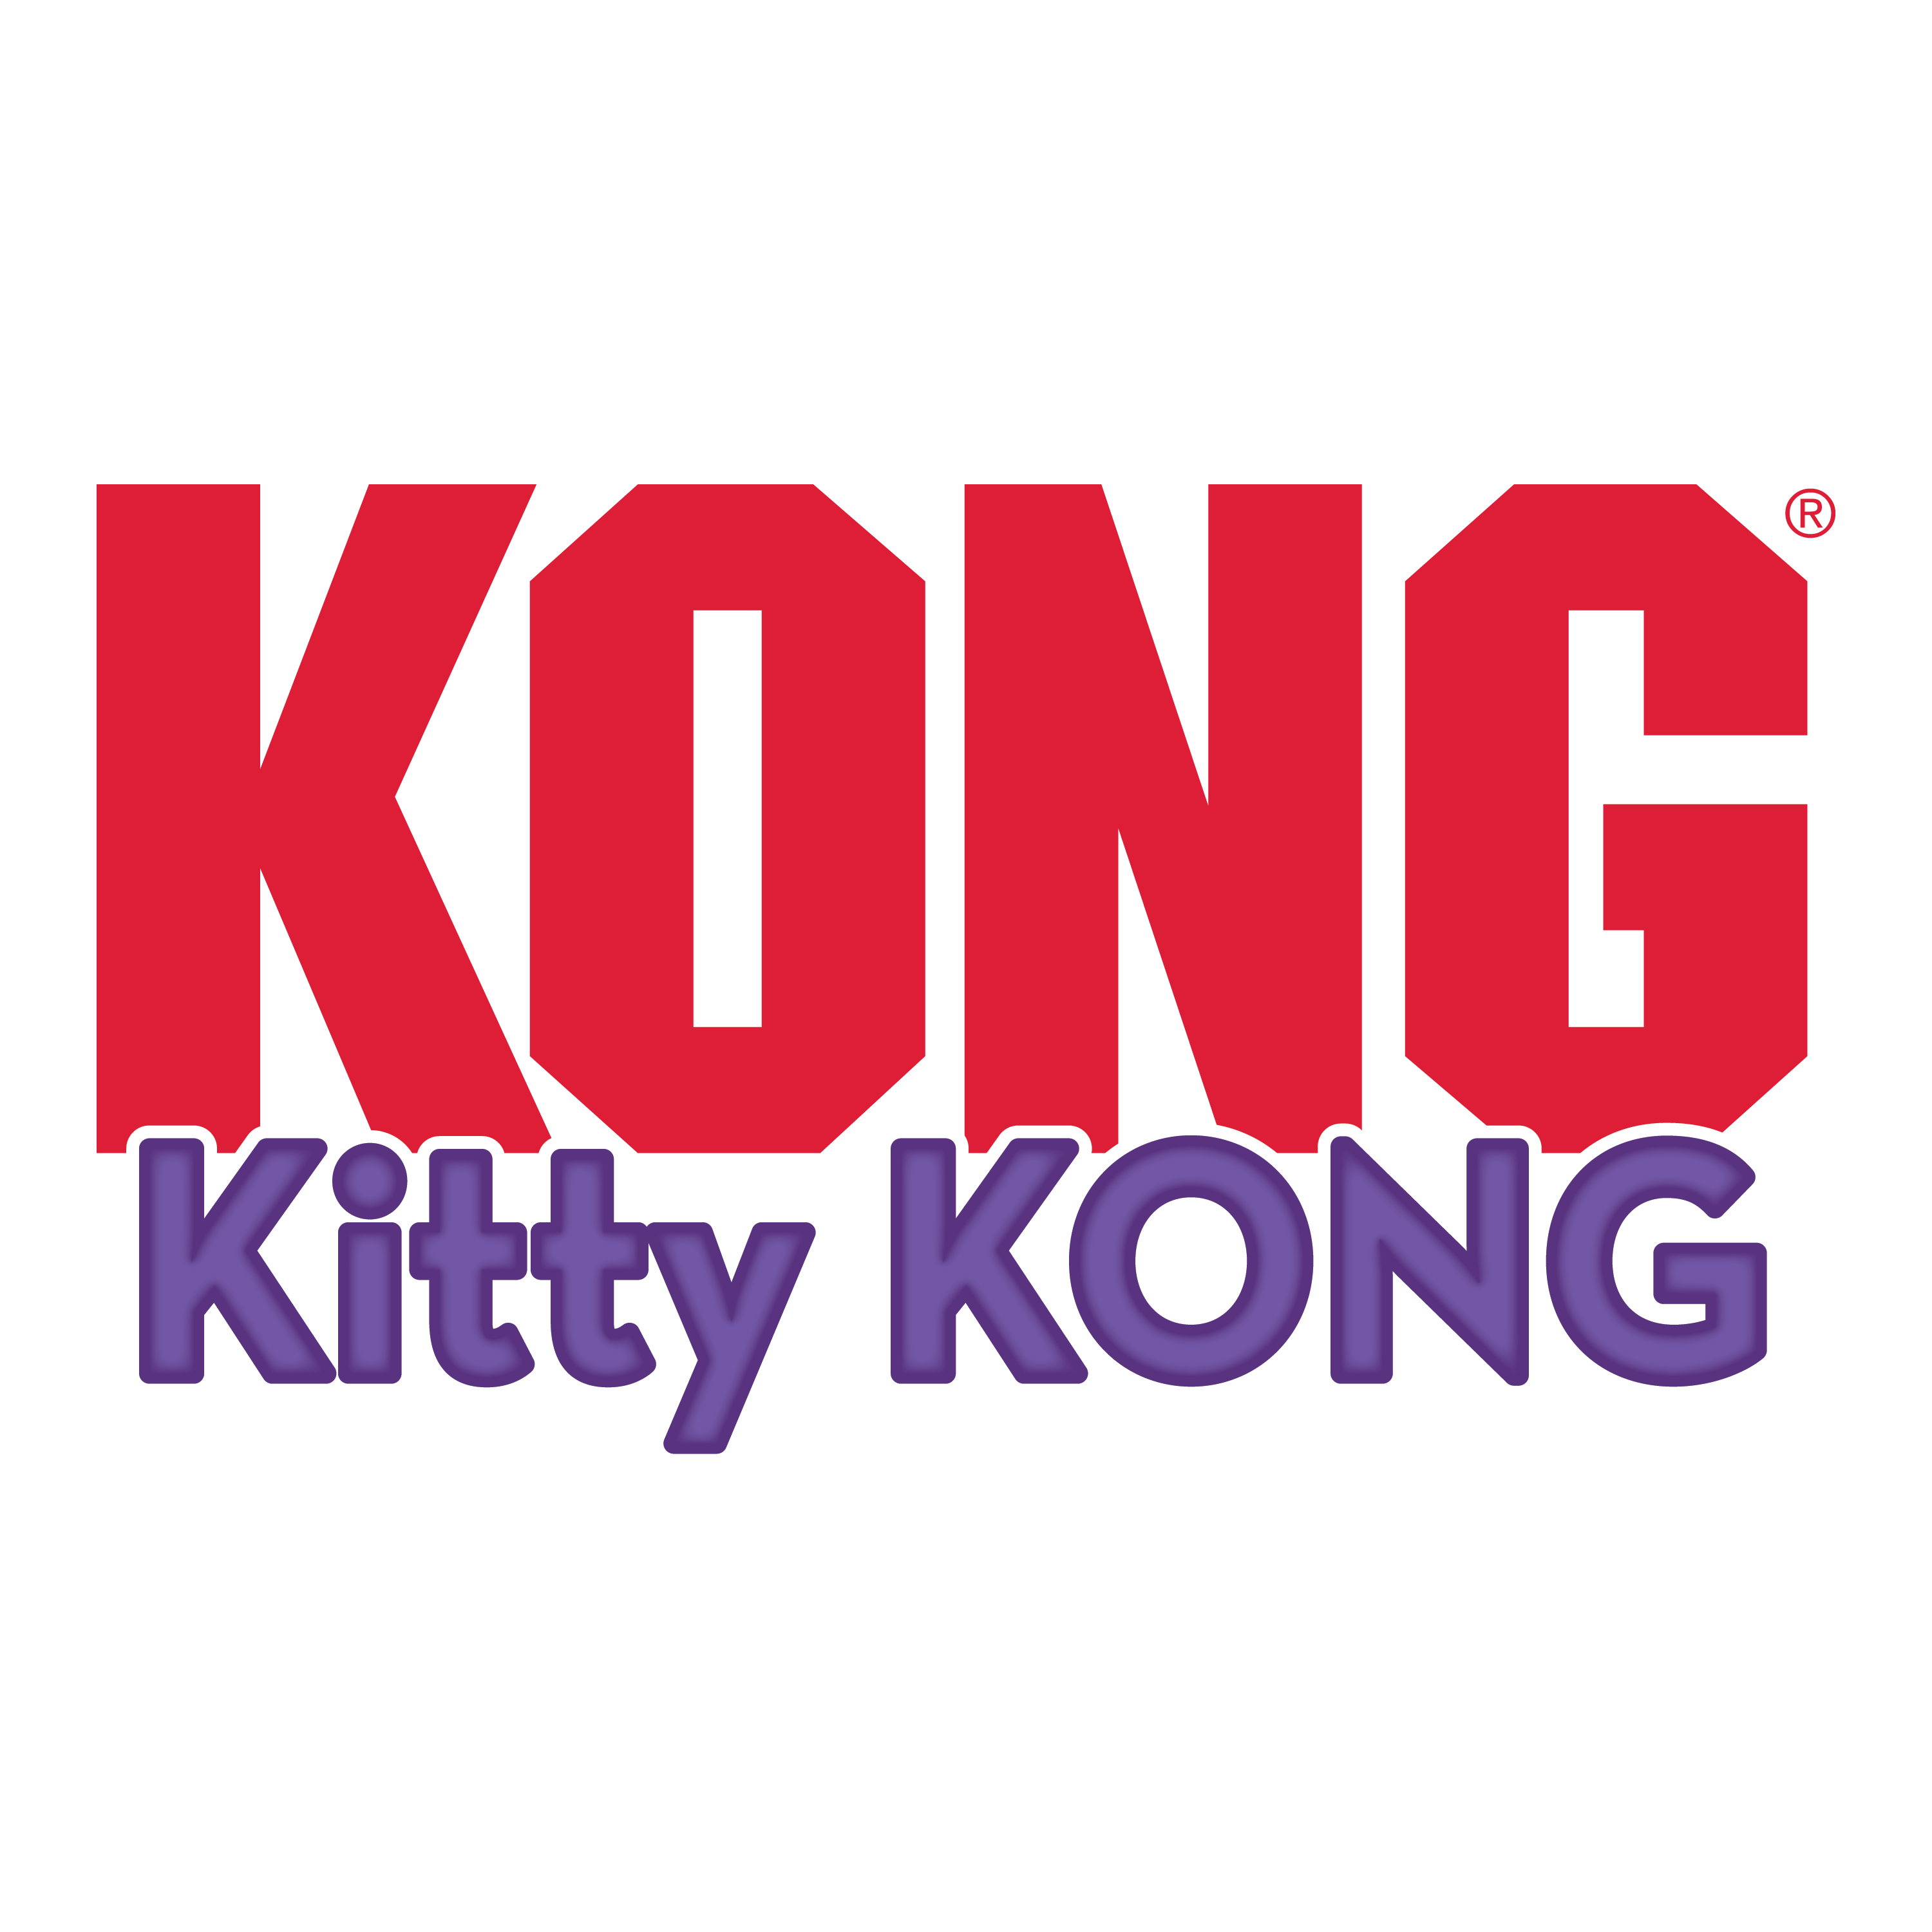 Kitty KONG alt1 Produktbild